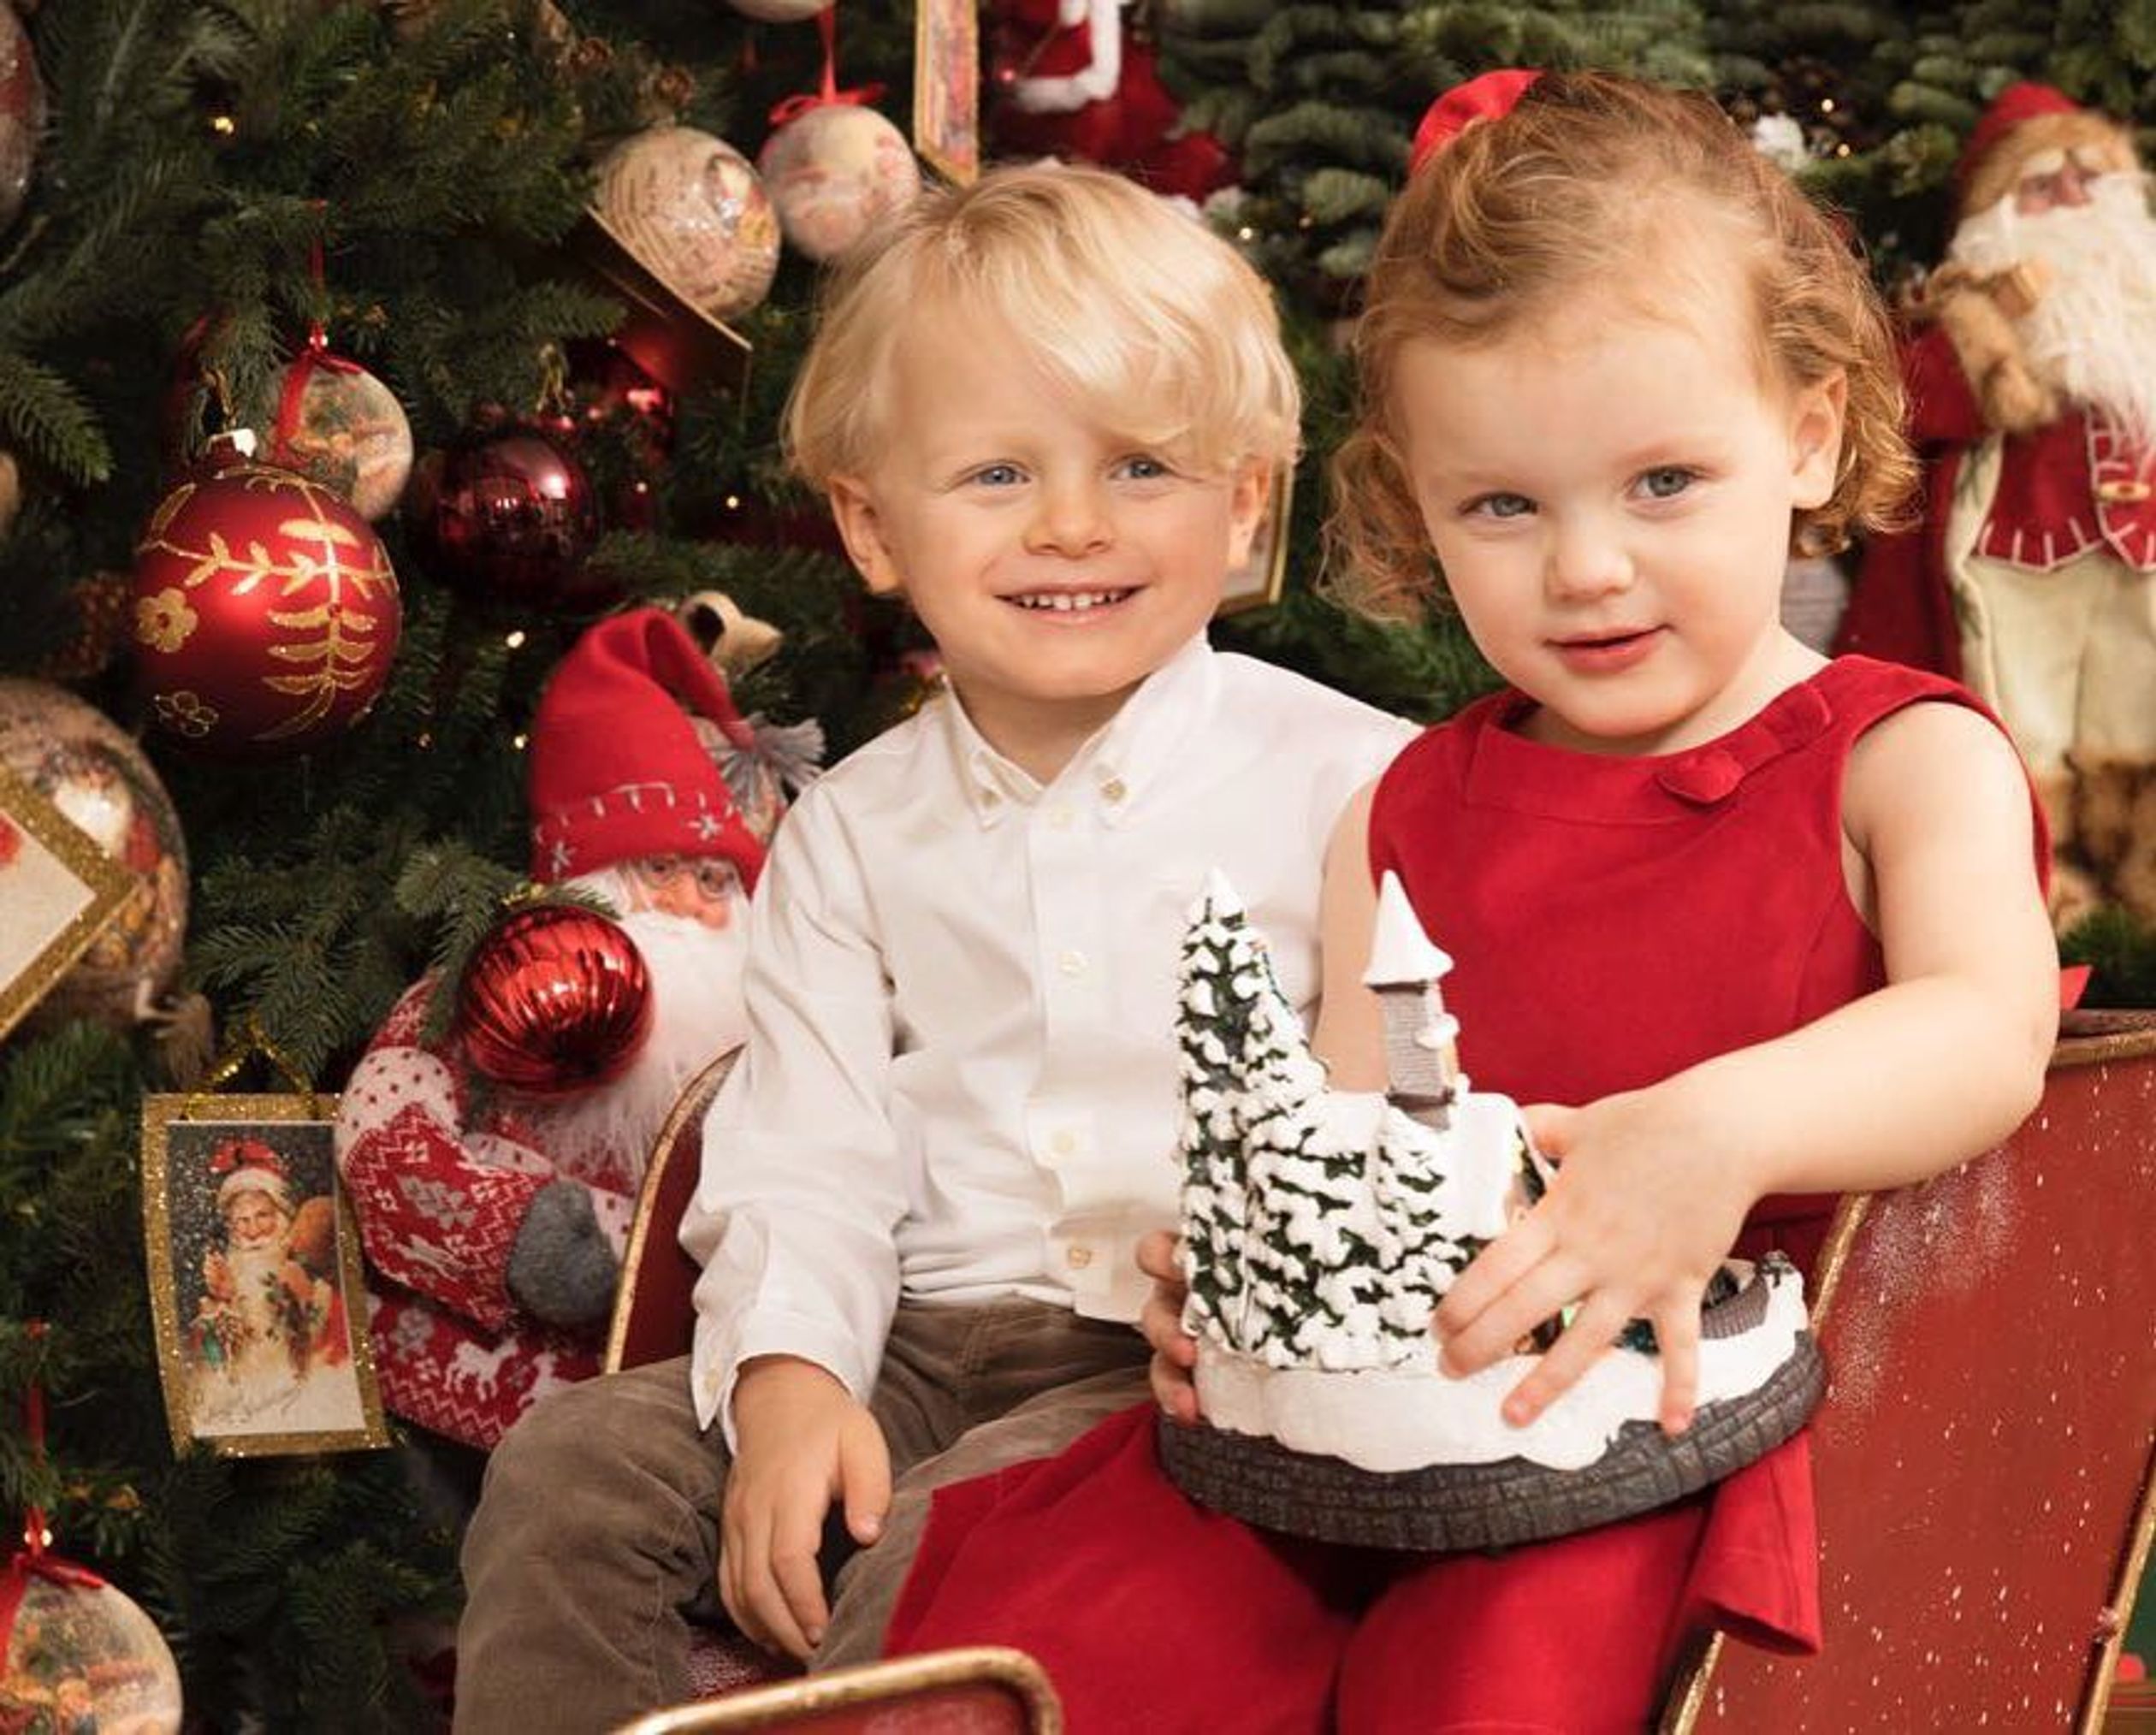 In 2017 poseert de tweeling in kerstkleding voor de kerstboom.